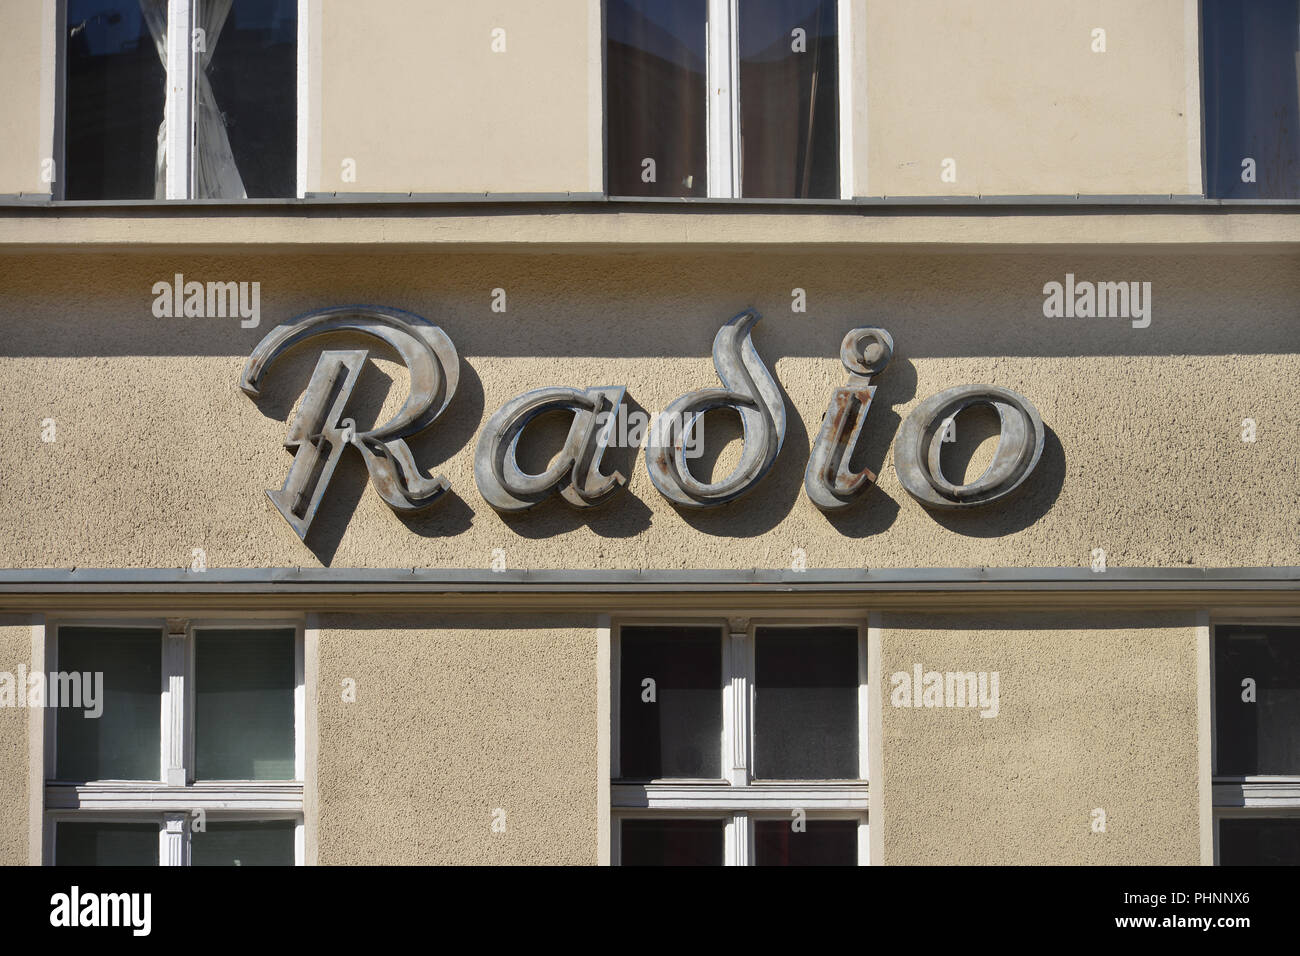 Alte Radio Werbung, Potsdamer Strasse, Schoeneberg, Berlin, Deutschland Stock Photo